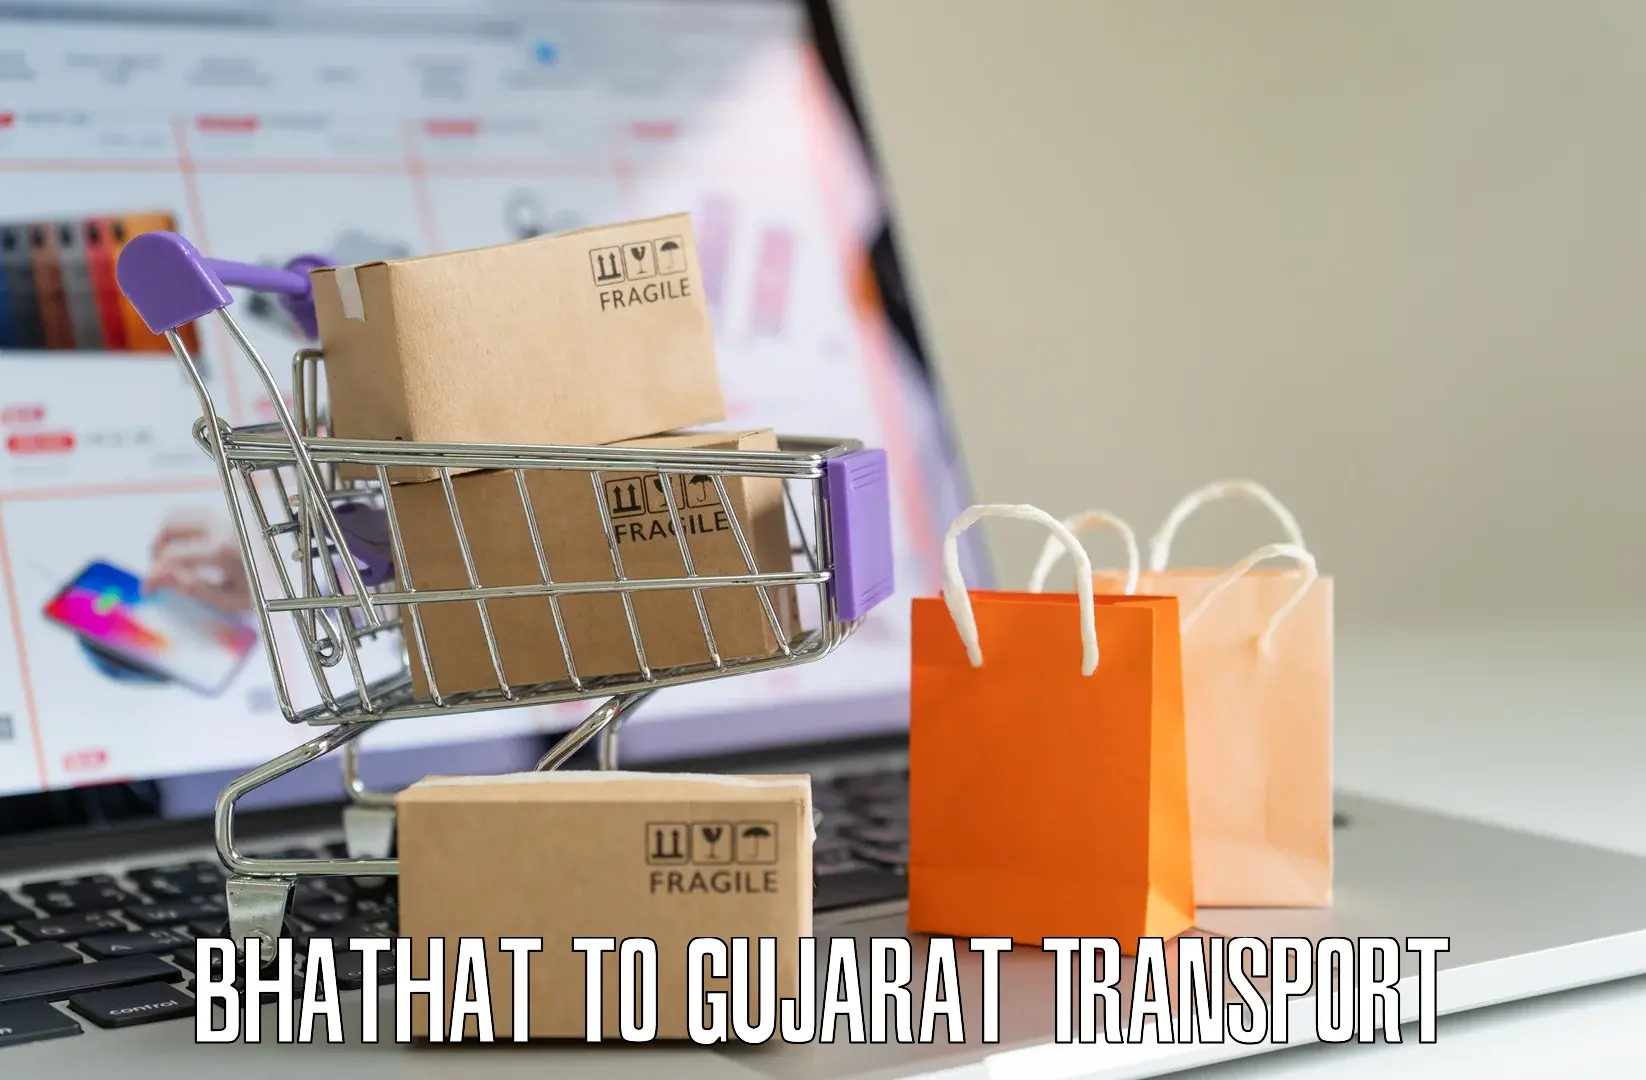 Shipping partner Bhathat to IIT Gandhi Nagar